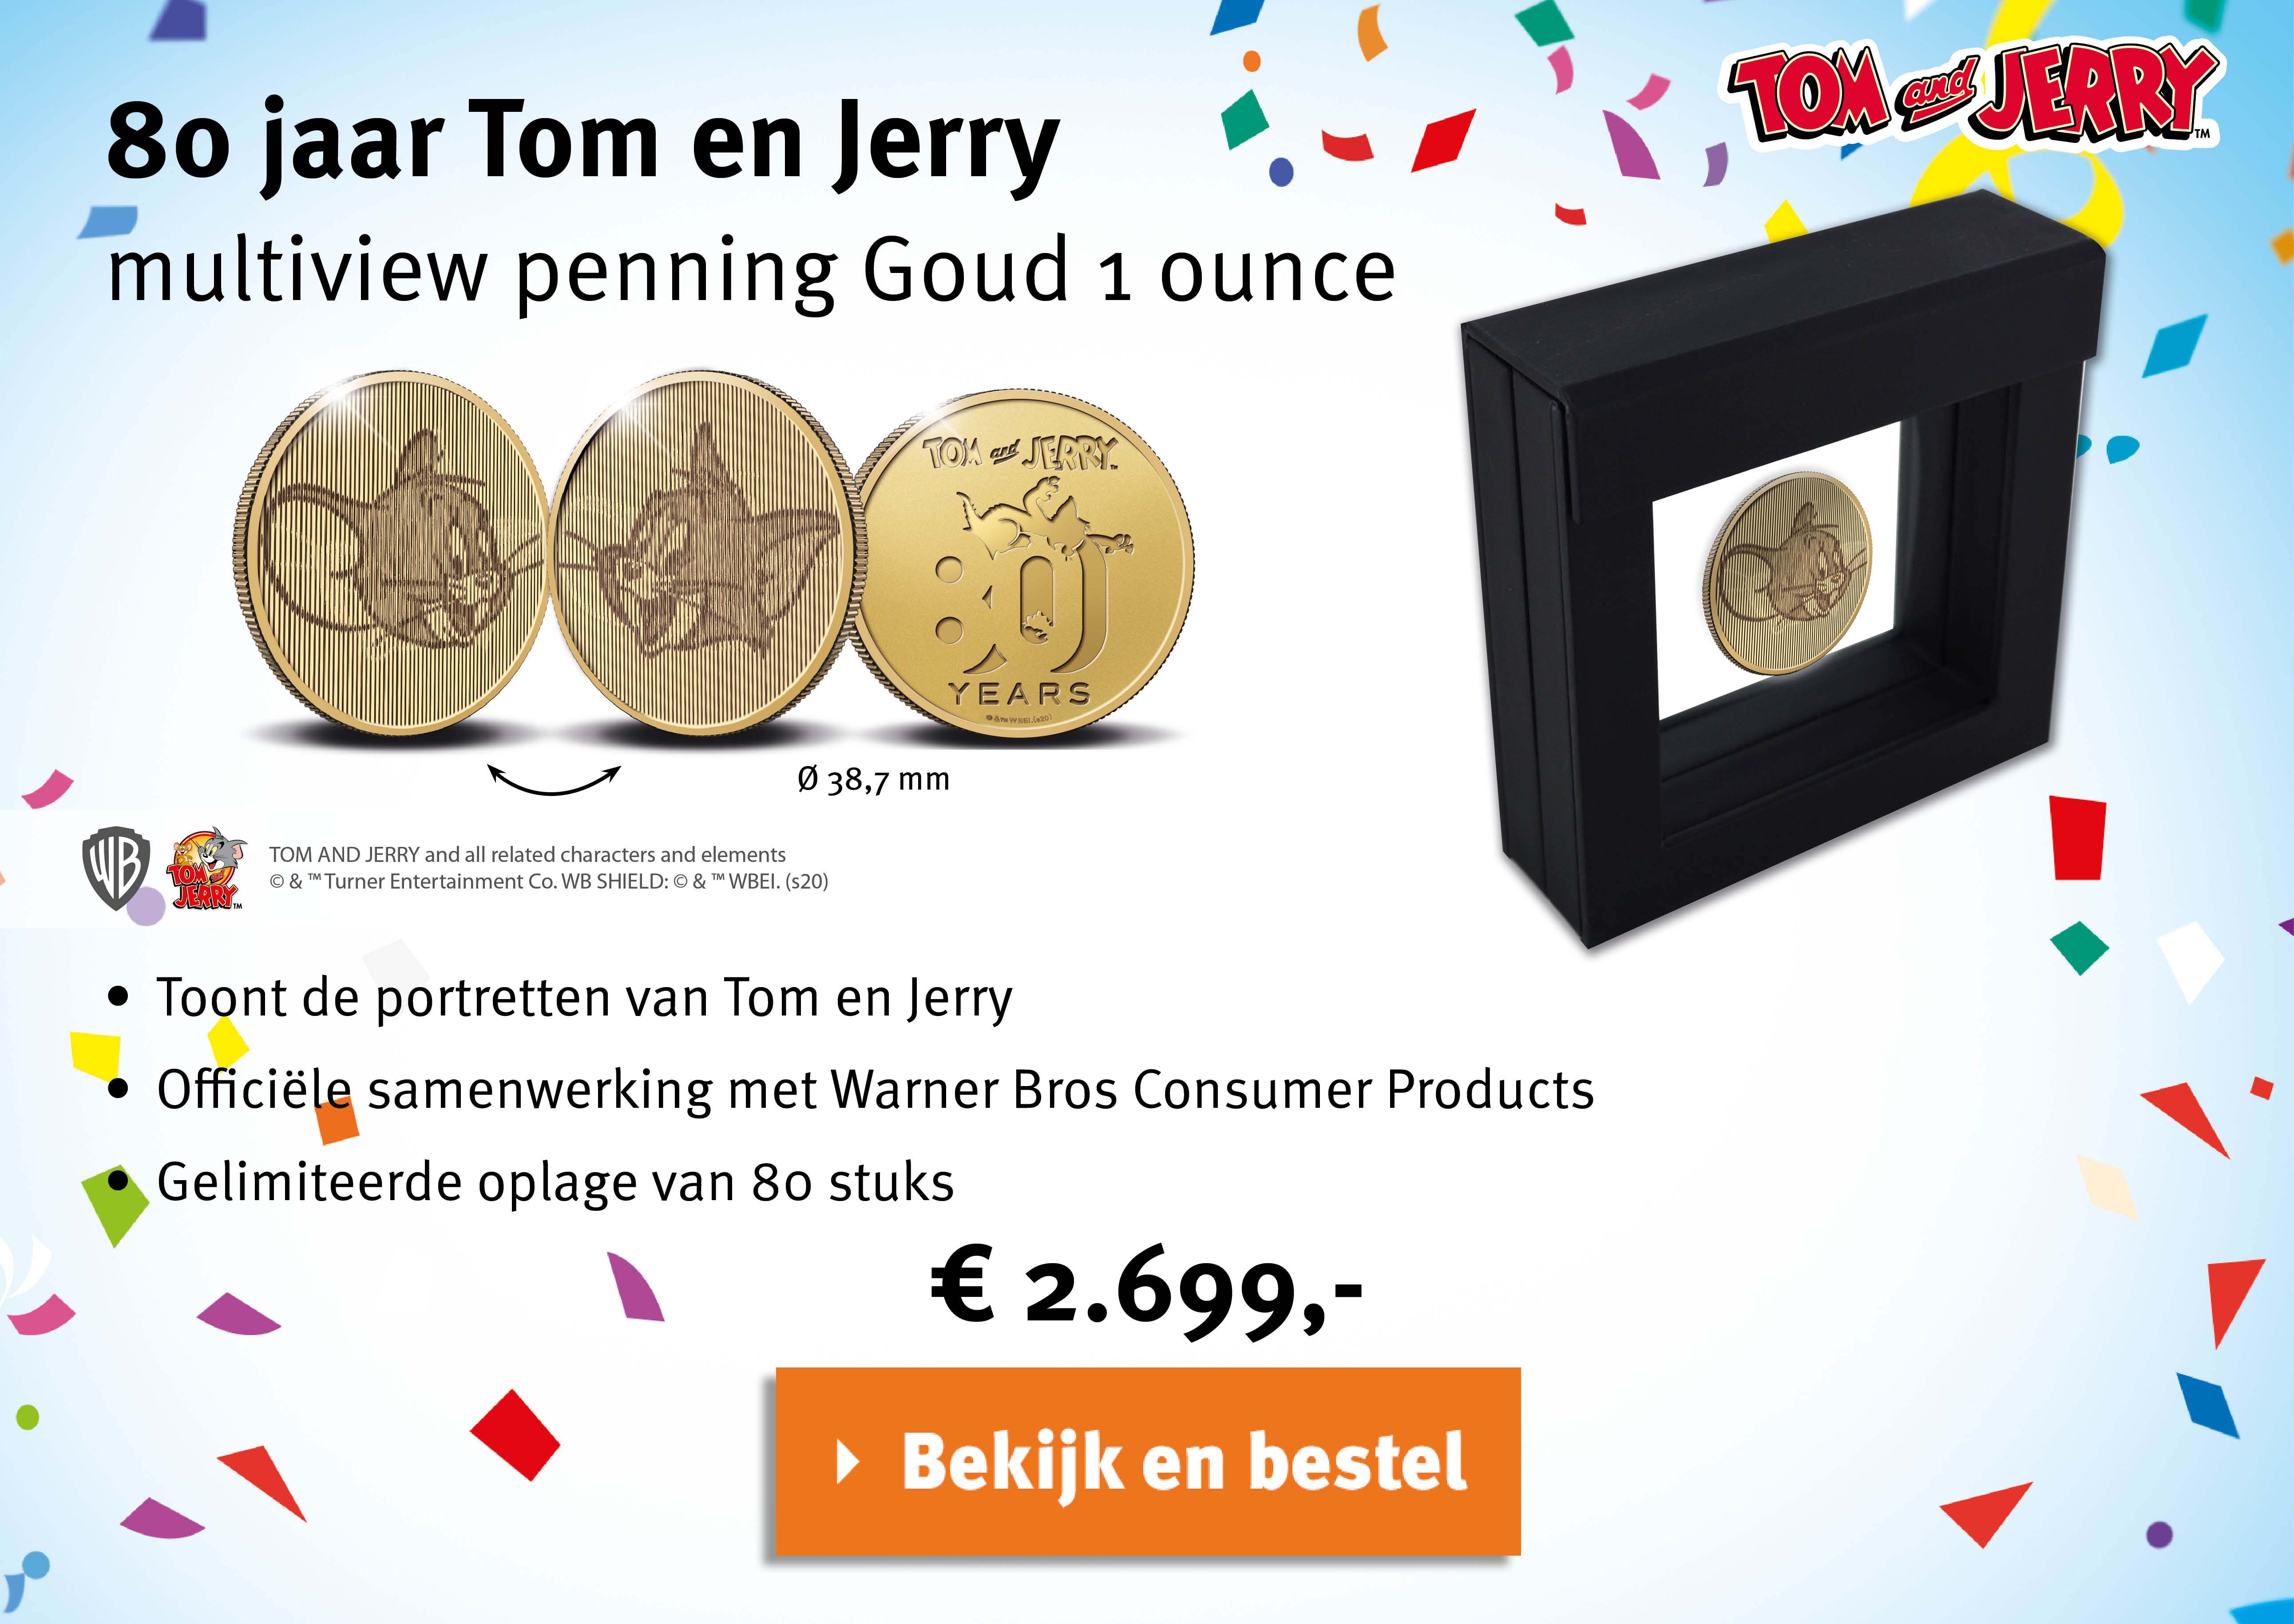 Bekijk en bestel: 80 jaar Tom en Jerry multiview penning Goud 1 ounce